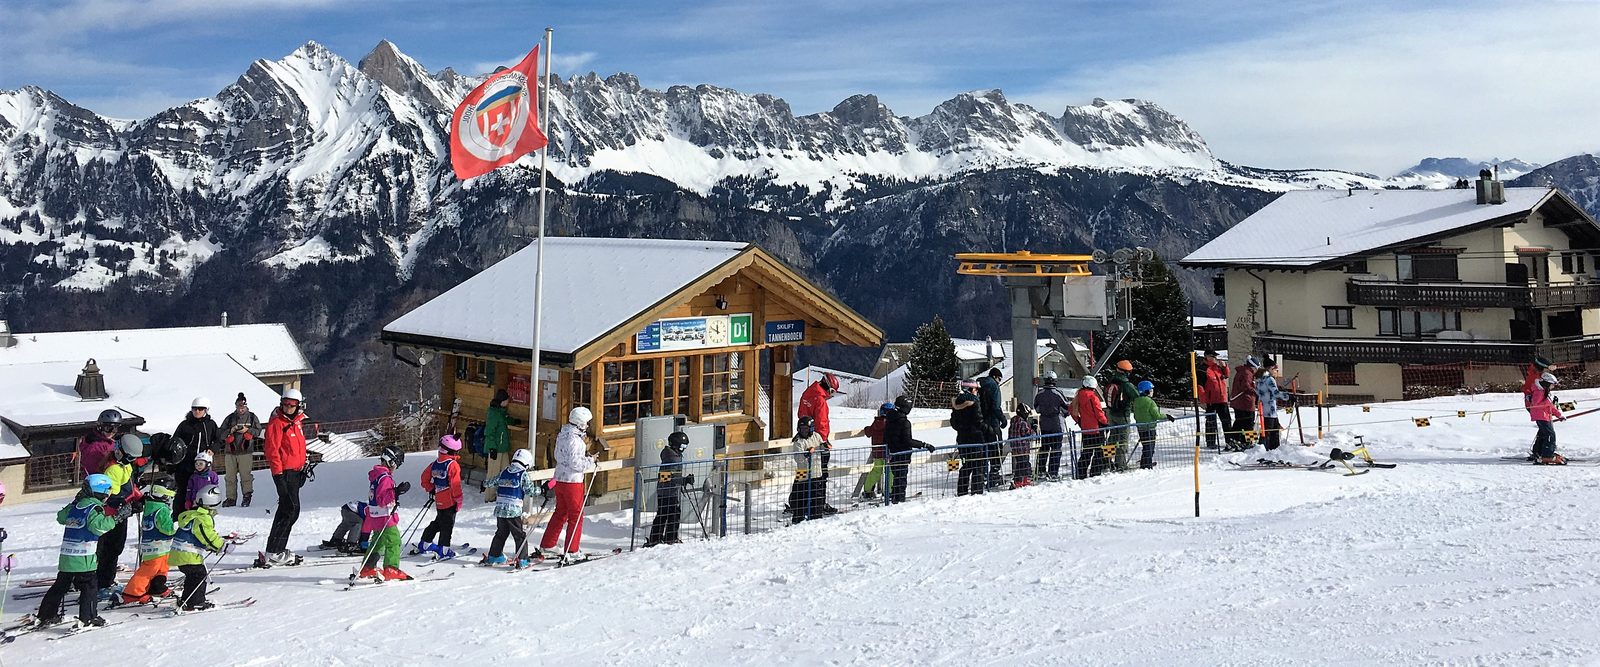 Skiën op de Flumserberg in Zwitserland. De sleepliften waar beginners leren skiën of snowboarden. Ook veel langlaufloipes.